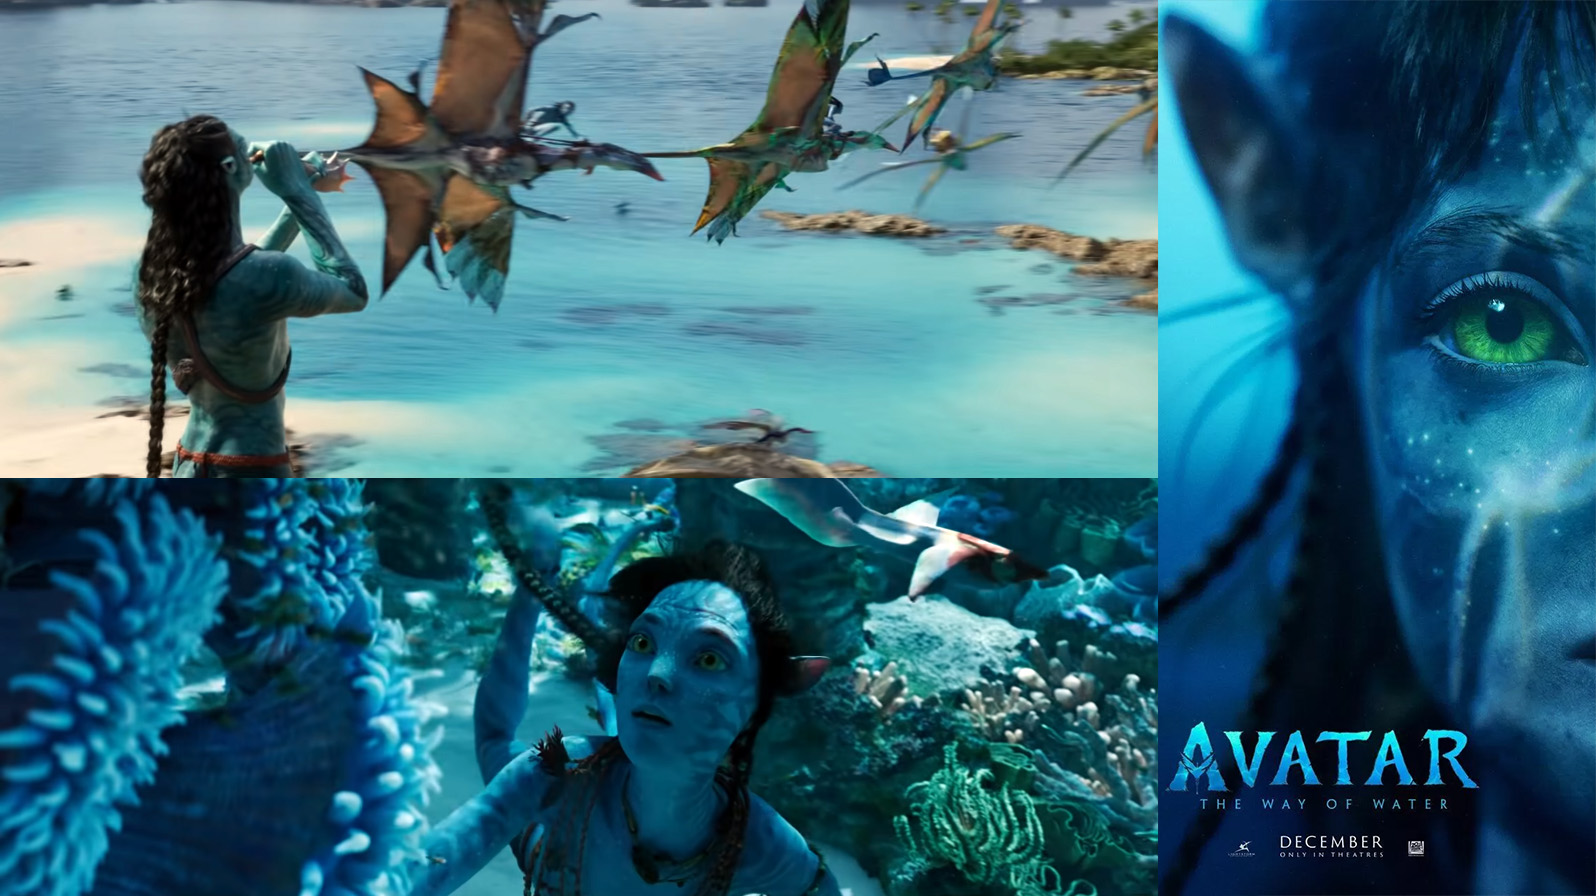 "Avatar: El camino del agua"